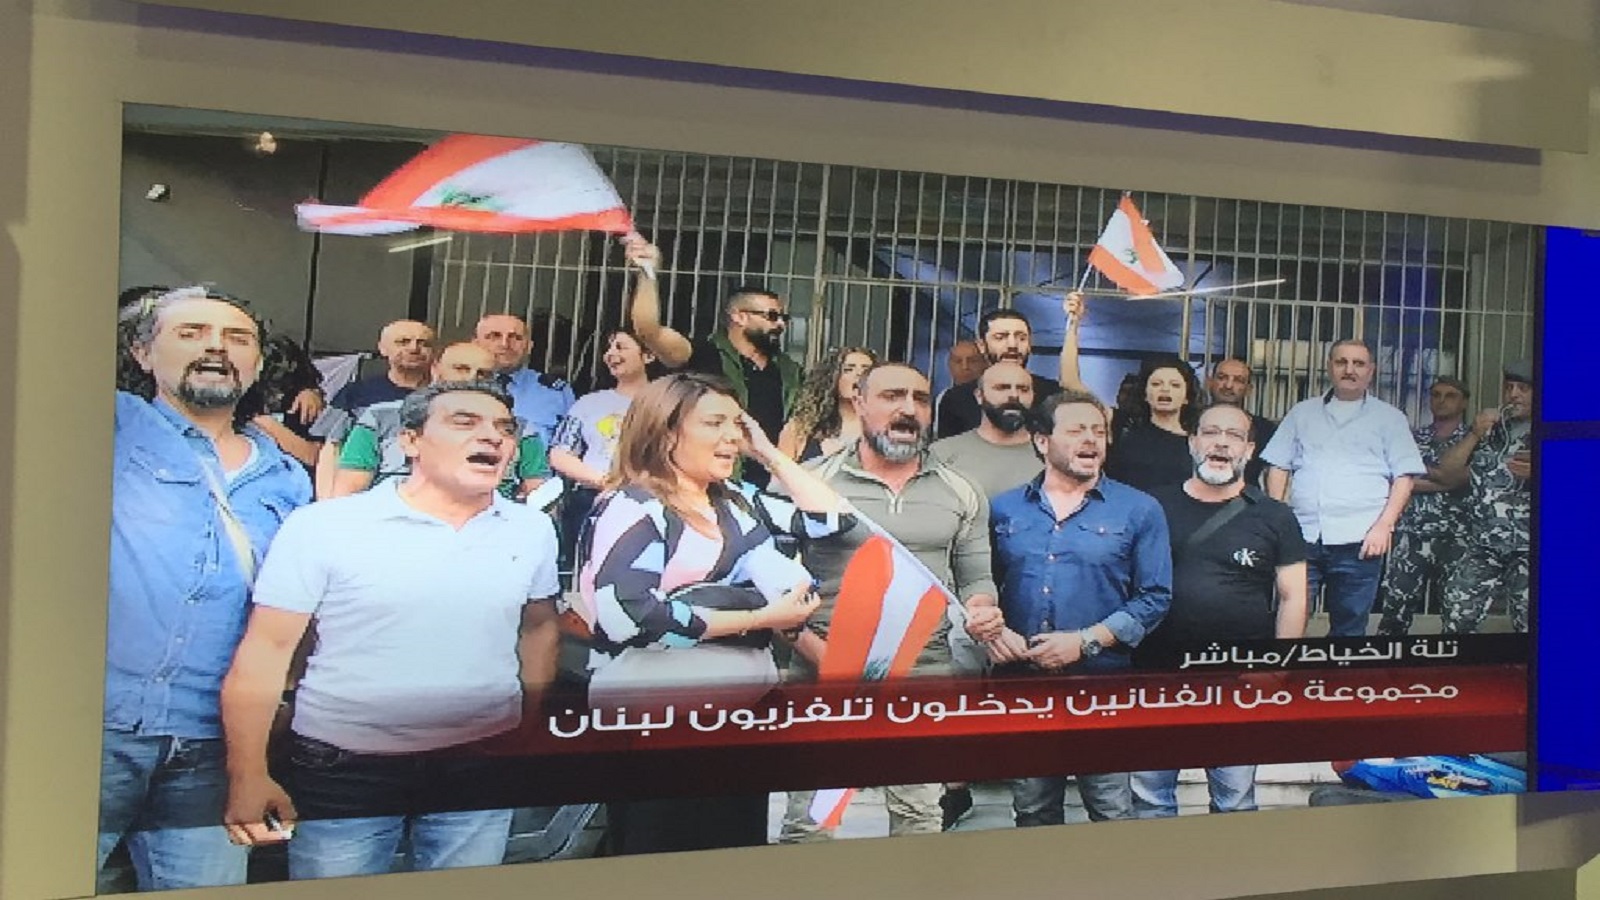 ثورة في "تلفزيون لبنان"!